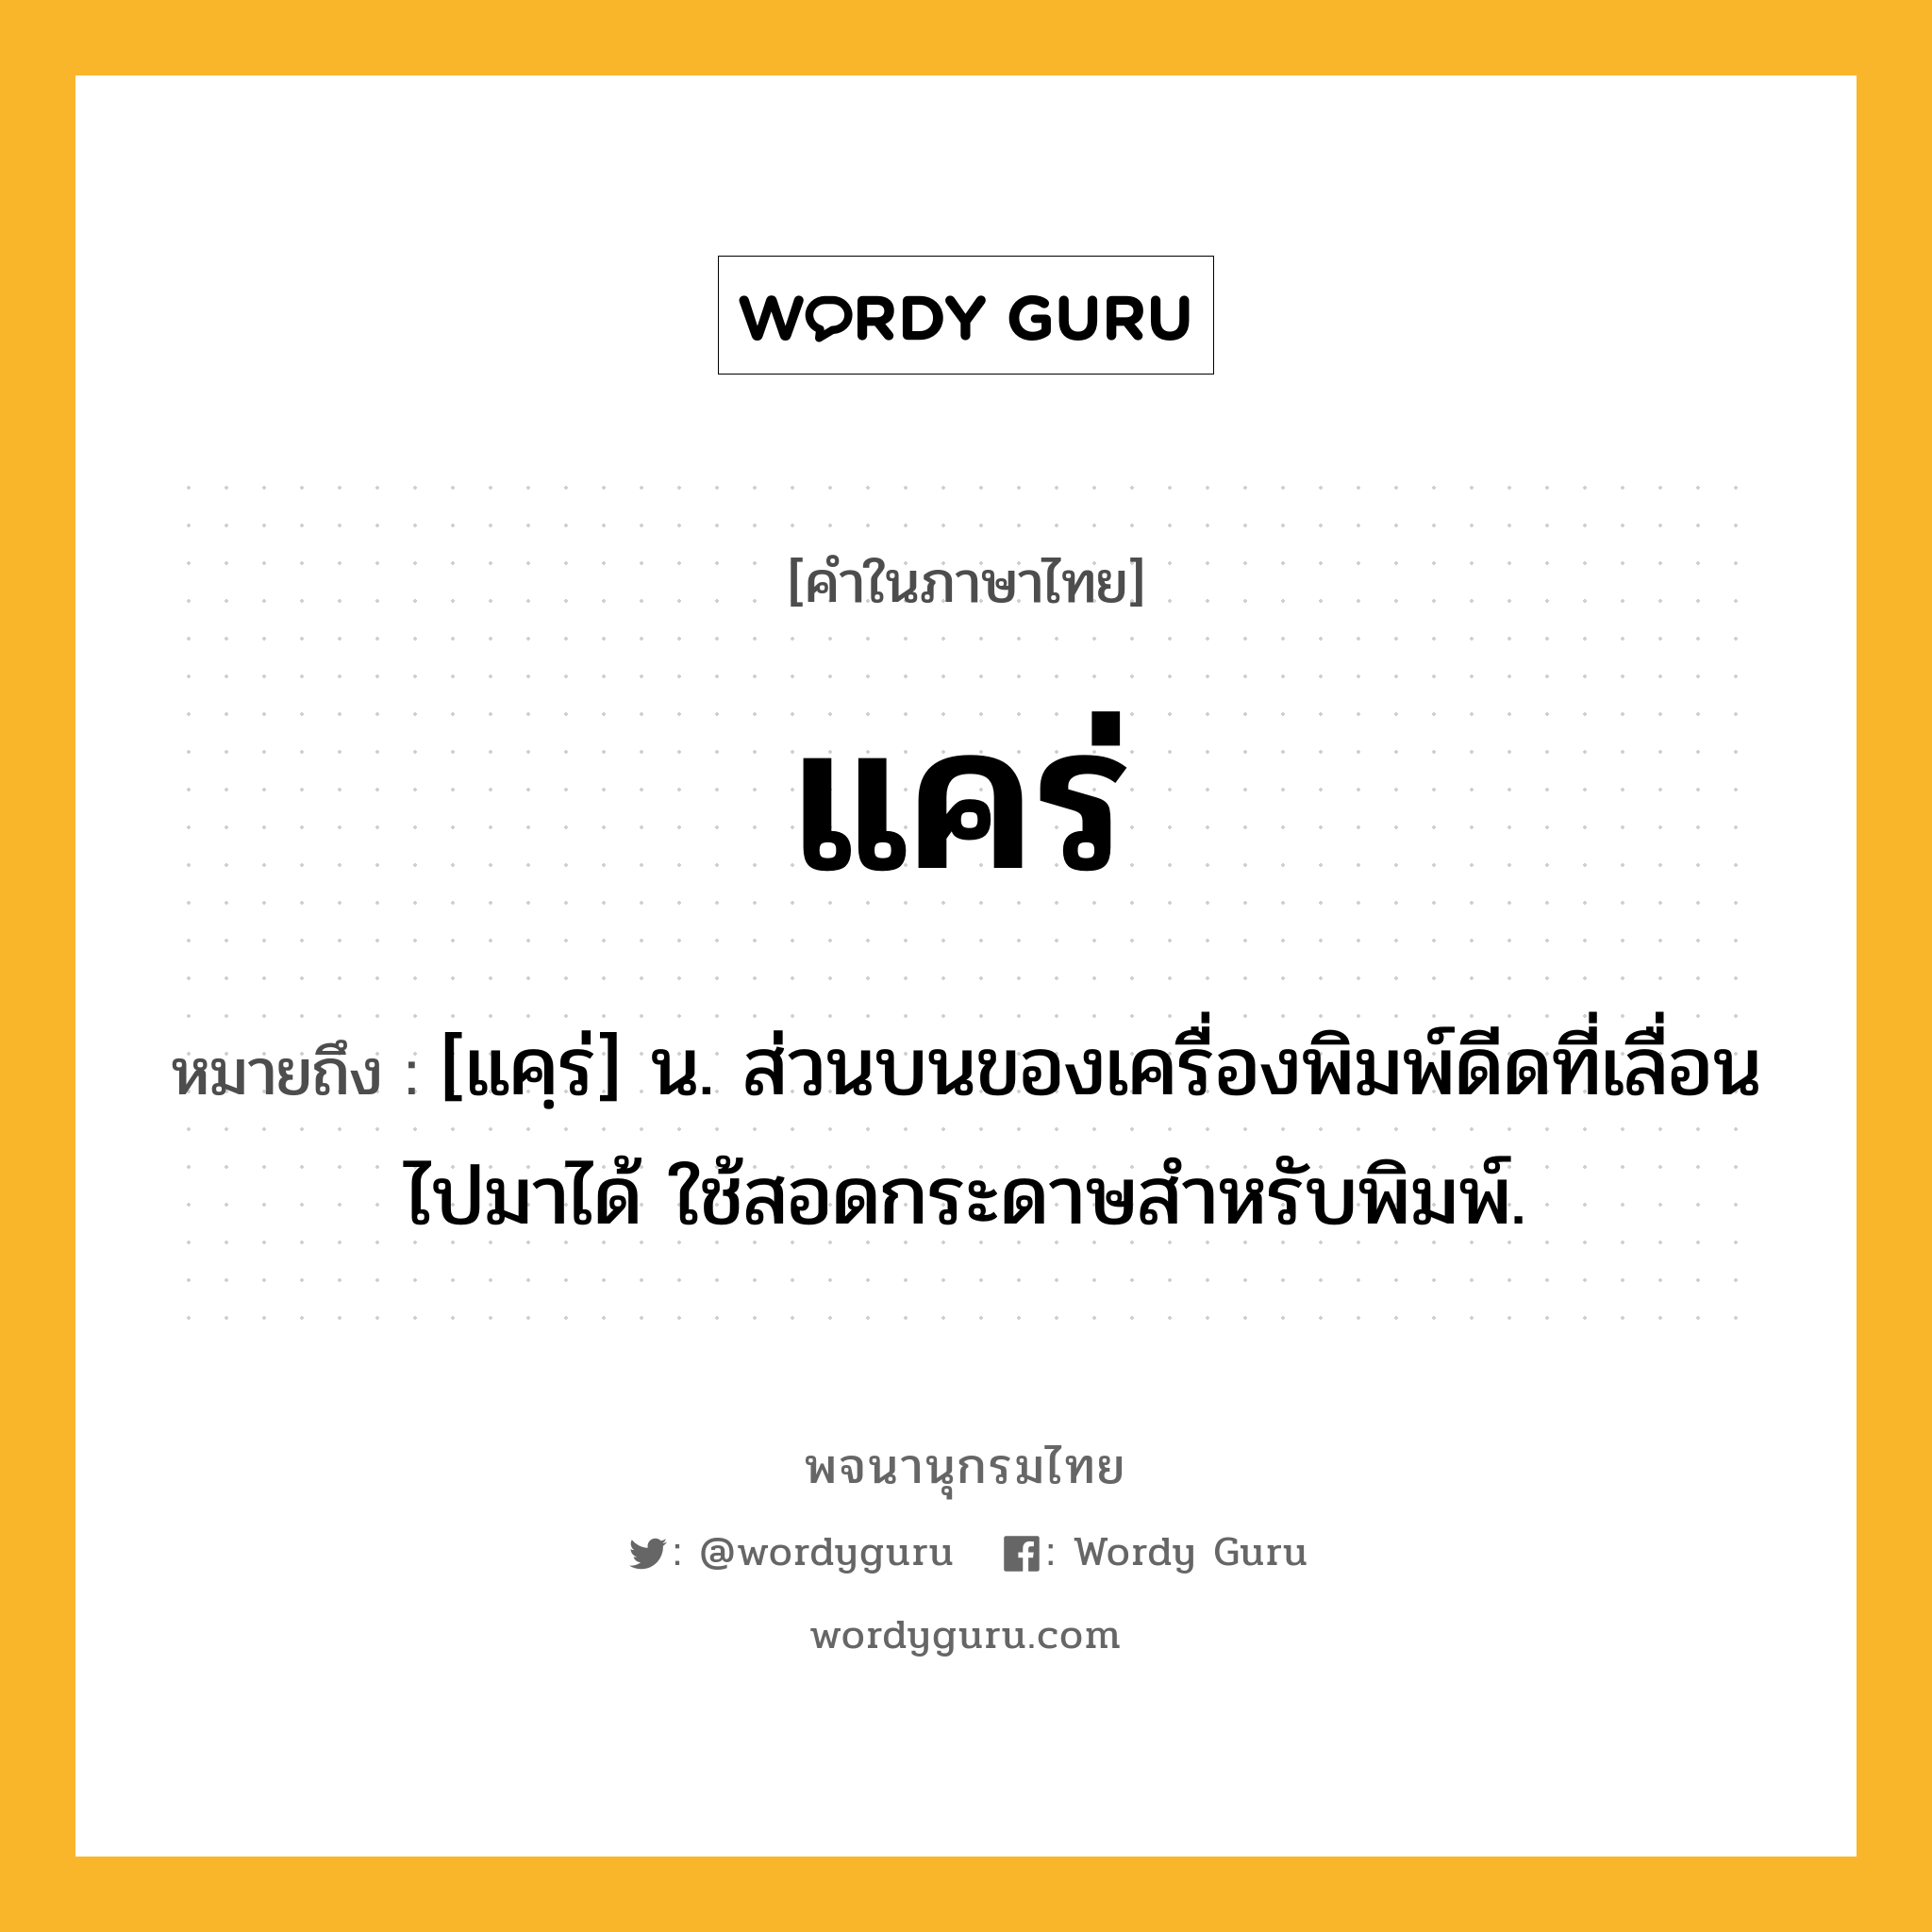 แคร่ หมายถึงอะไร?, คำในภาษาไทย แคร่ หมายถึง [แคฺร่] น. ส่วนบนของเครื่องพิมพ์ดีดที่เลื่อนไปมาได้ ใช้สอดกระดาษสำหรับพิมพ์.